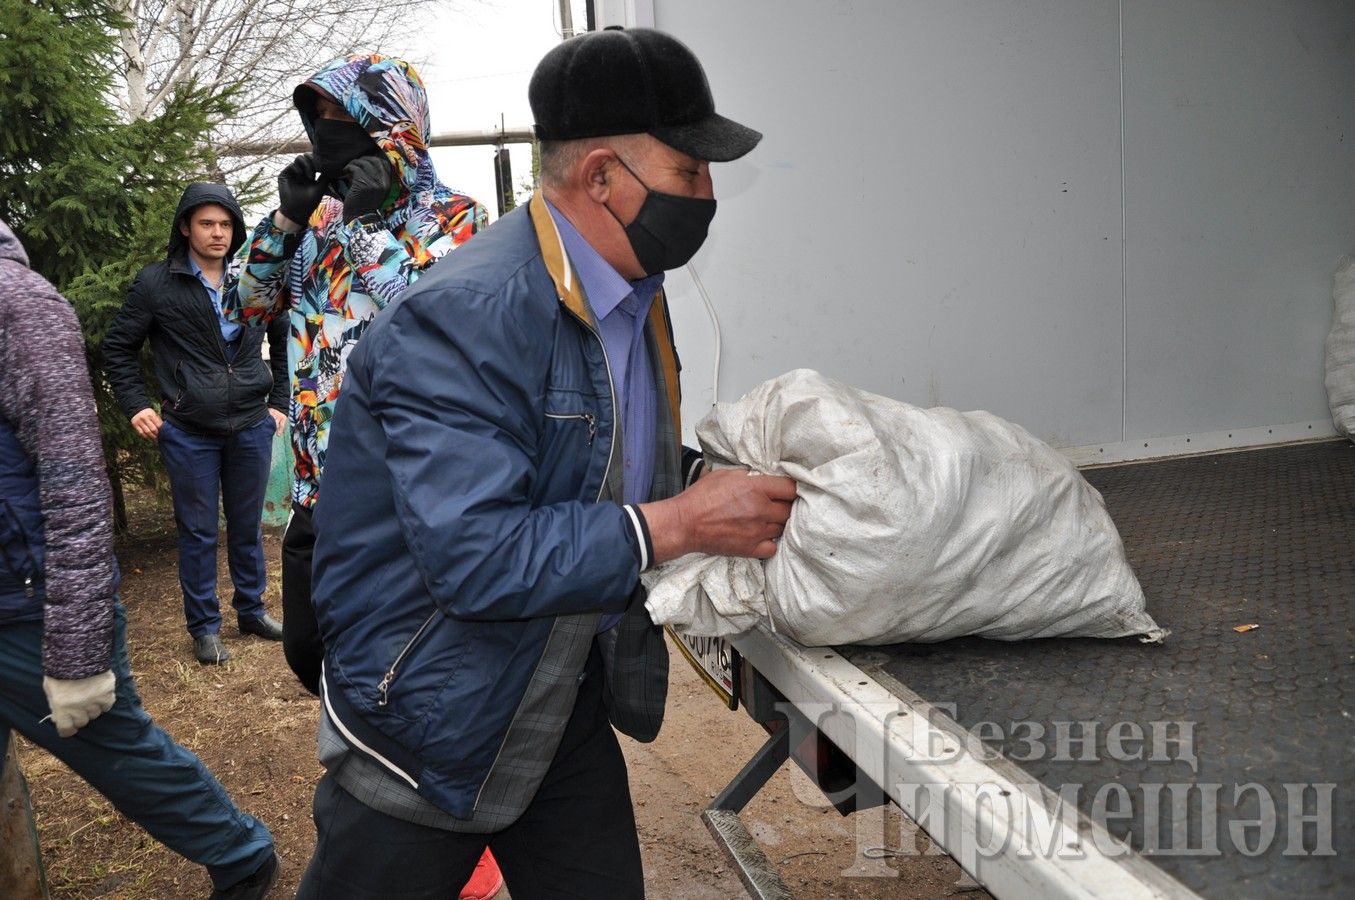 Черемшанцы отправили студентам около 3 тонн продуктов